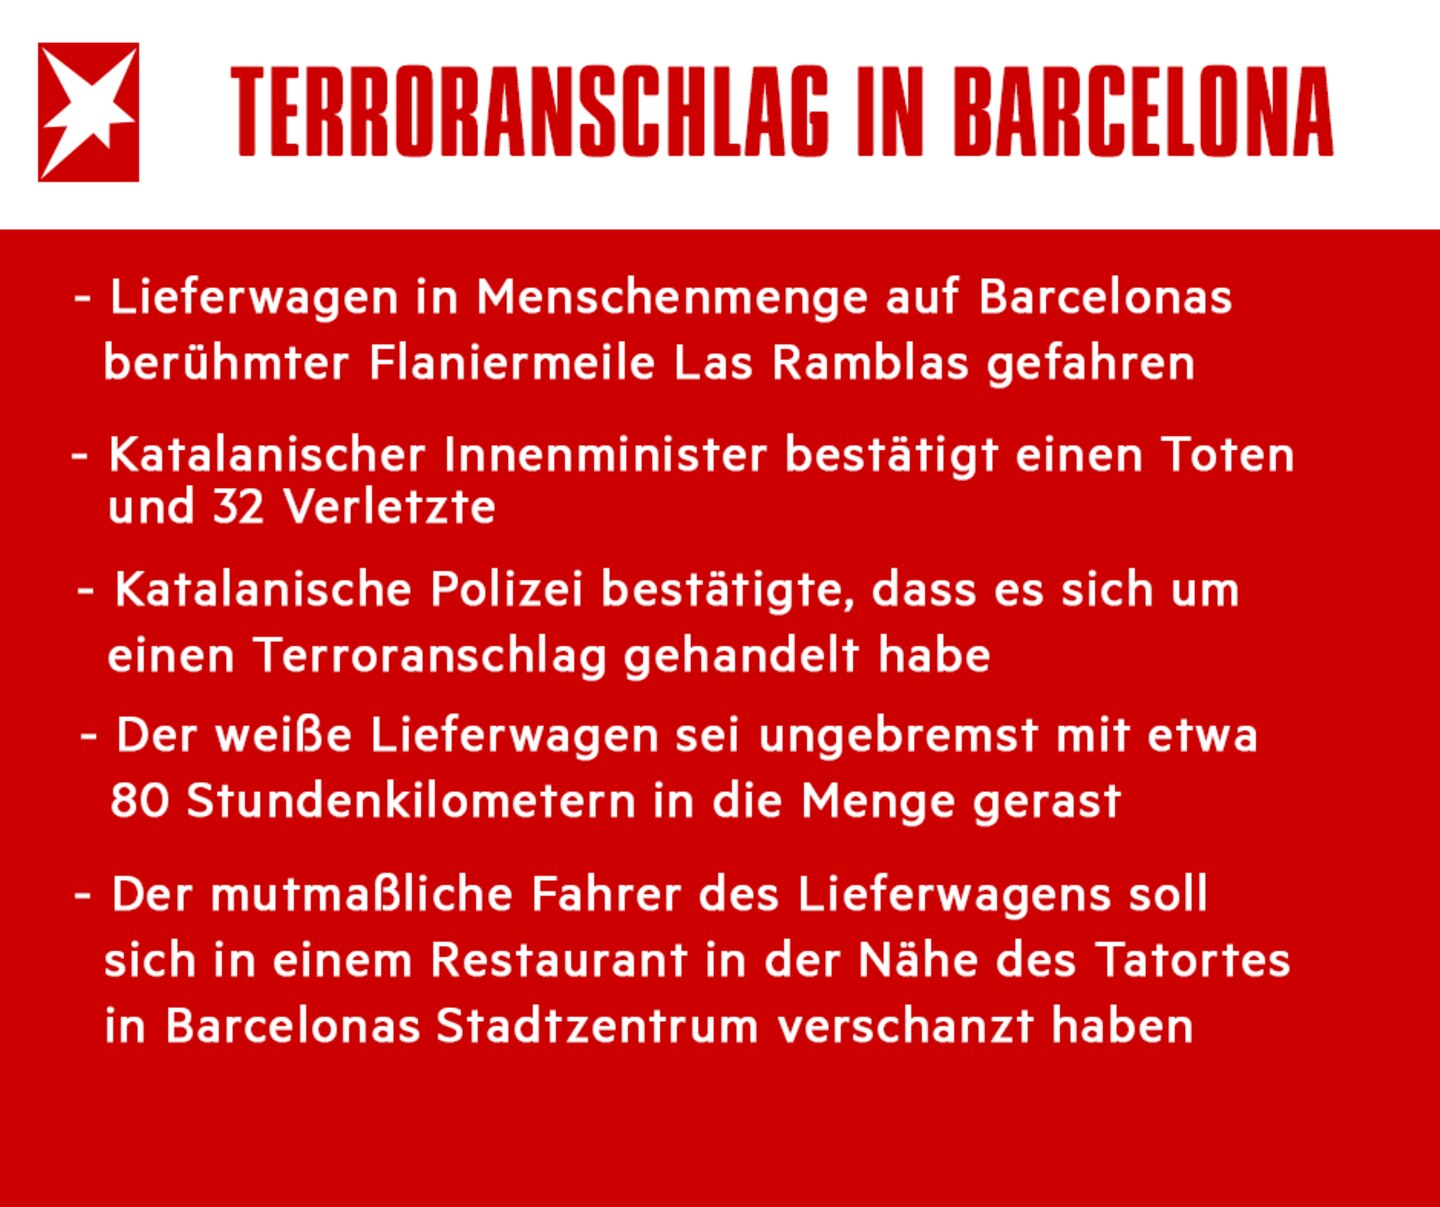 Barcelona: Drei Deutsche unter Todesopfern - IS bekennt sich zu Anschlag | STERN.de